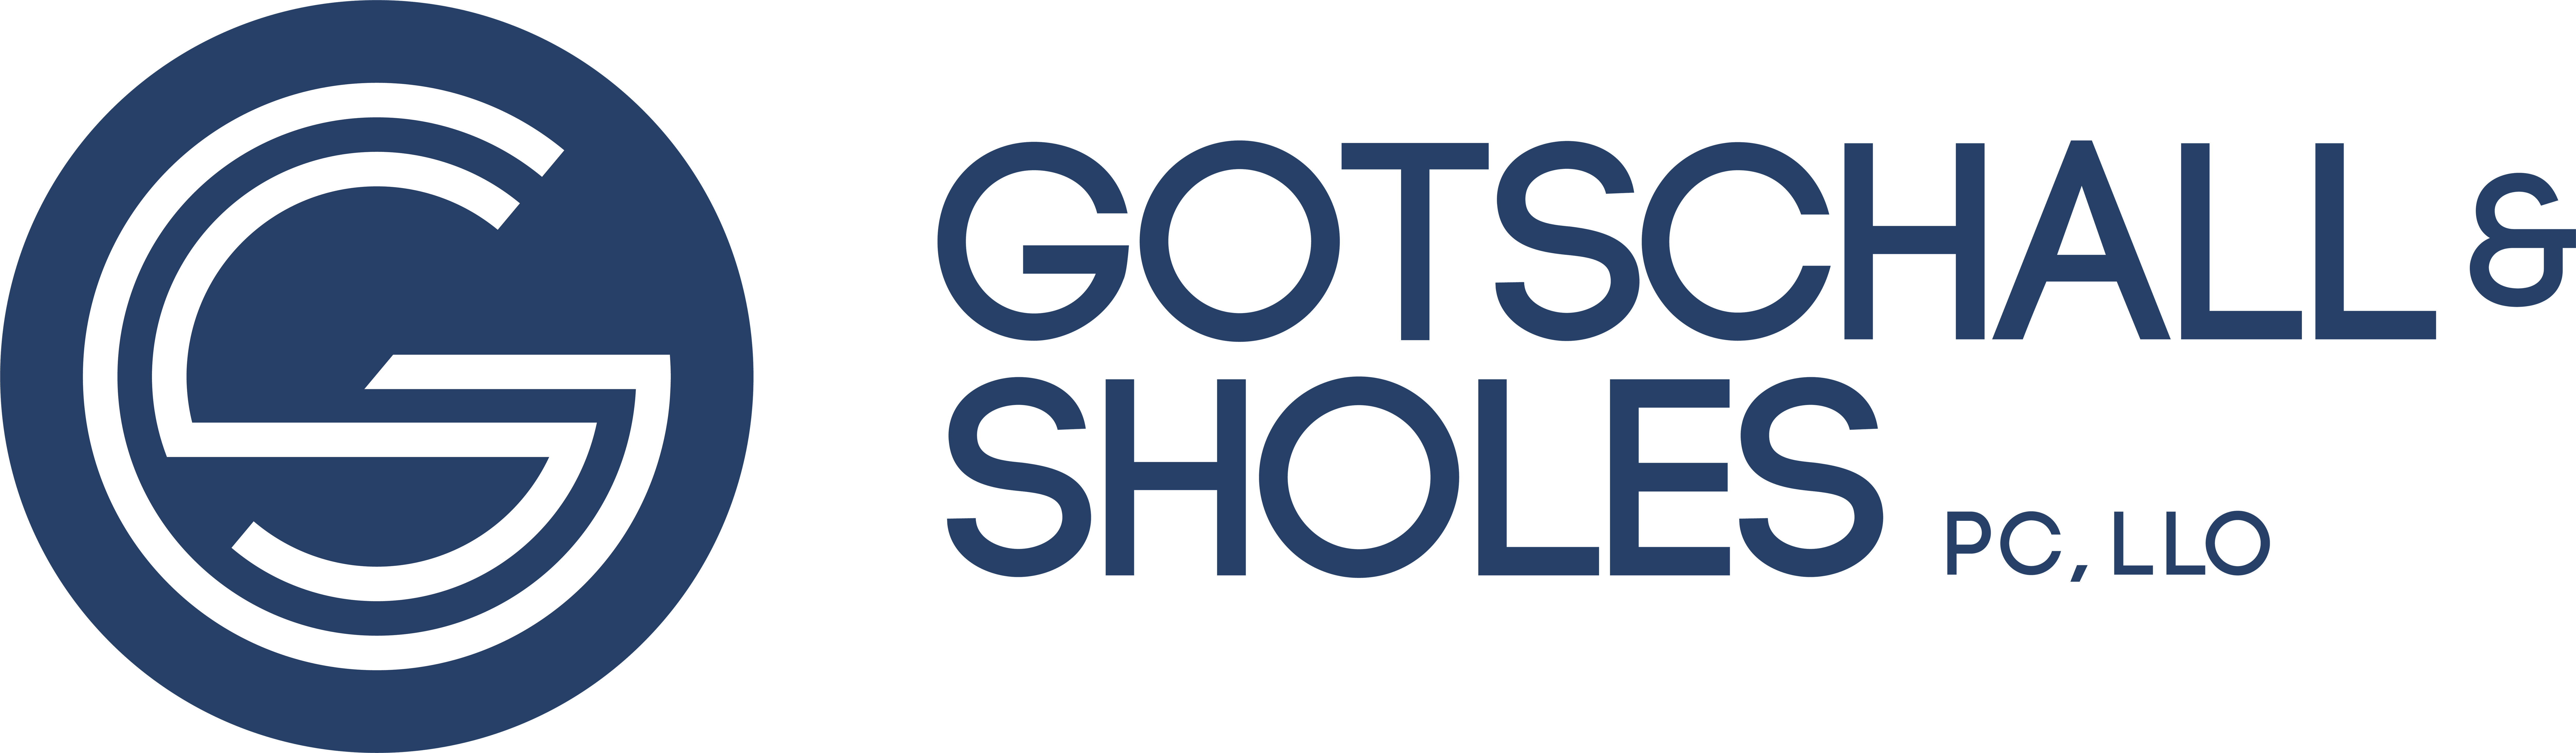 Gotschall & Sholes